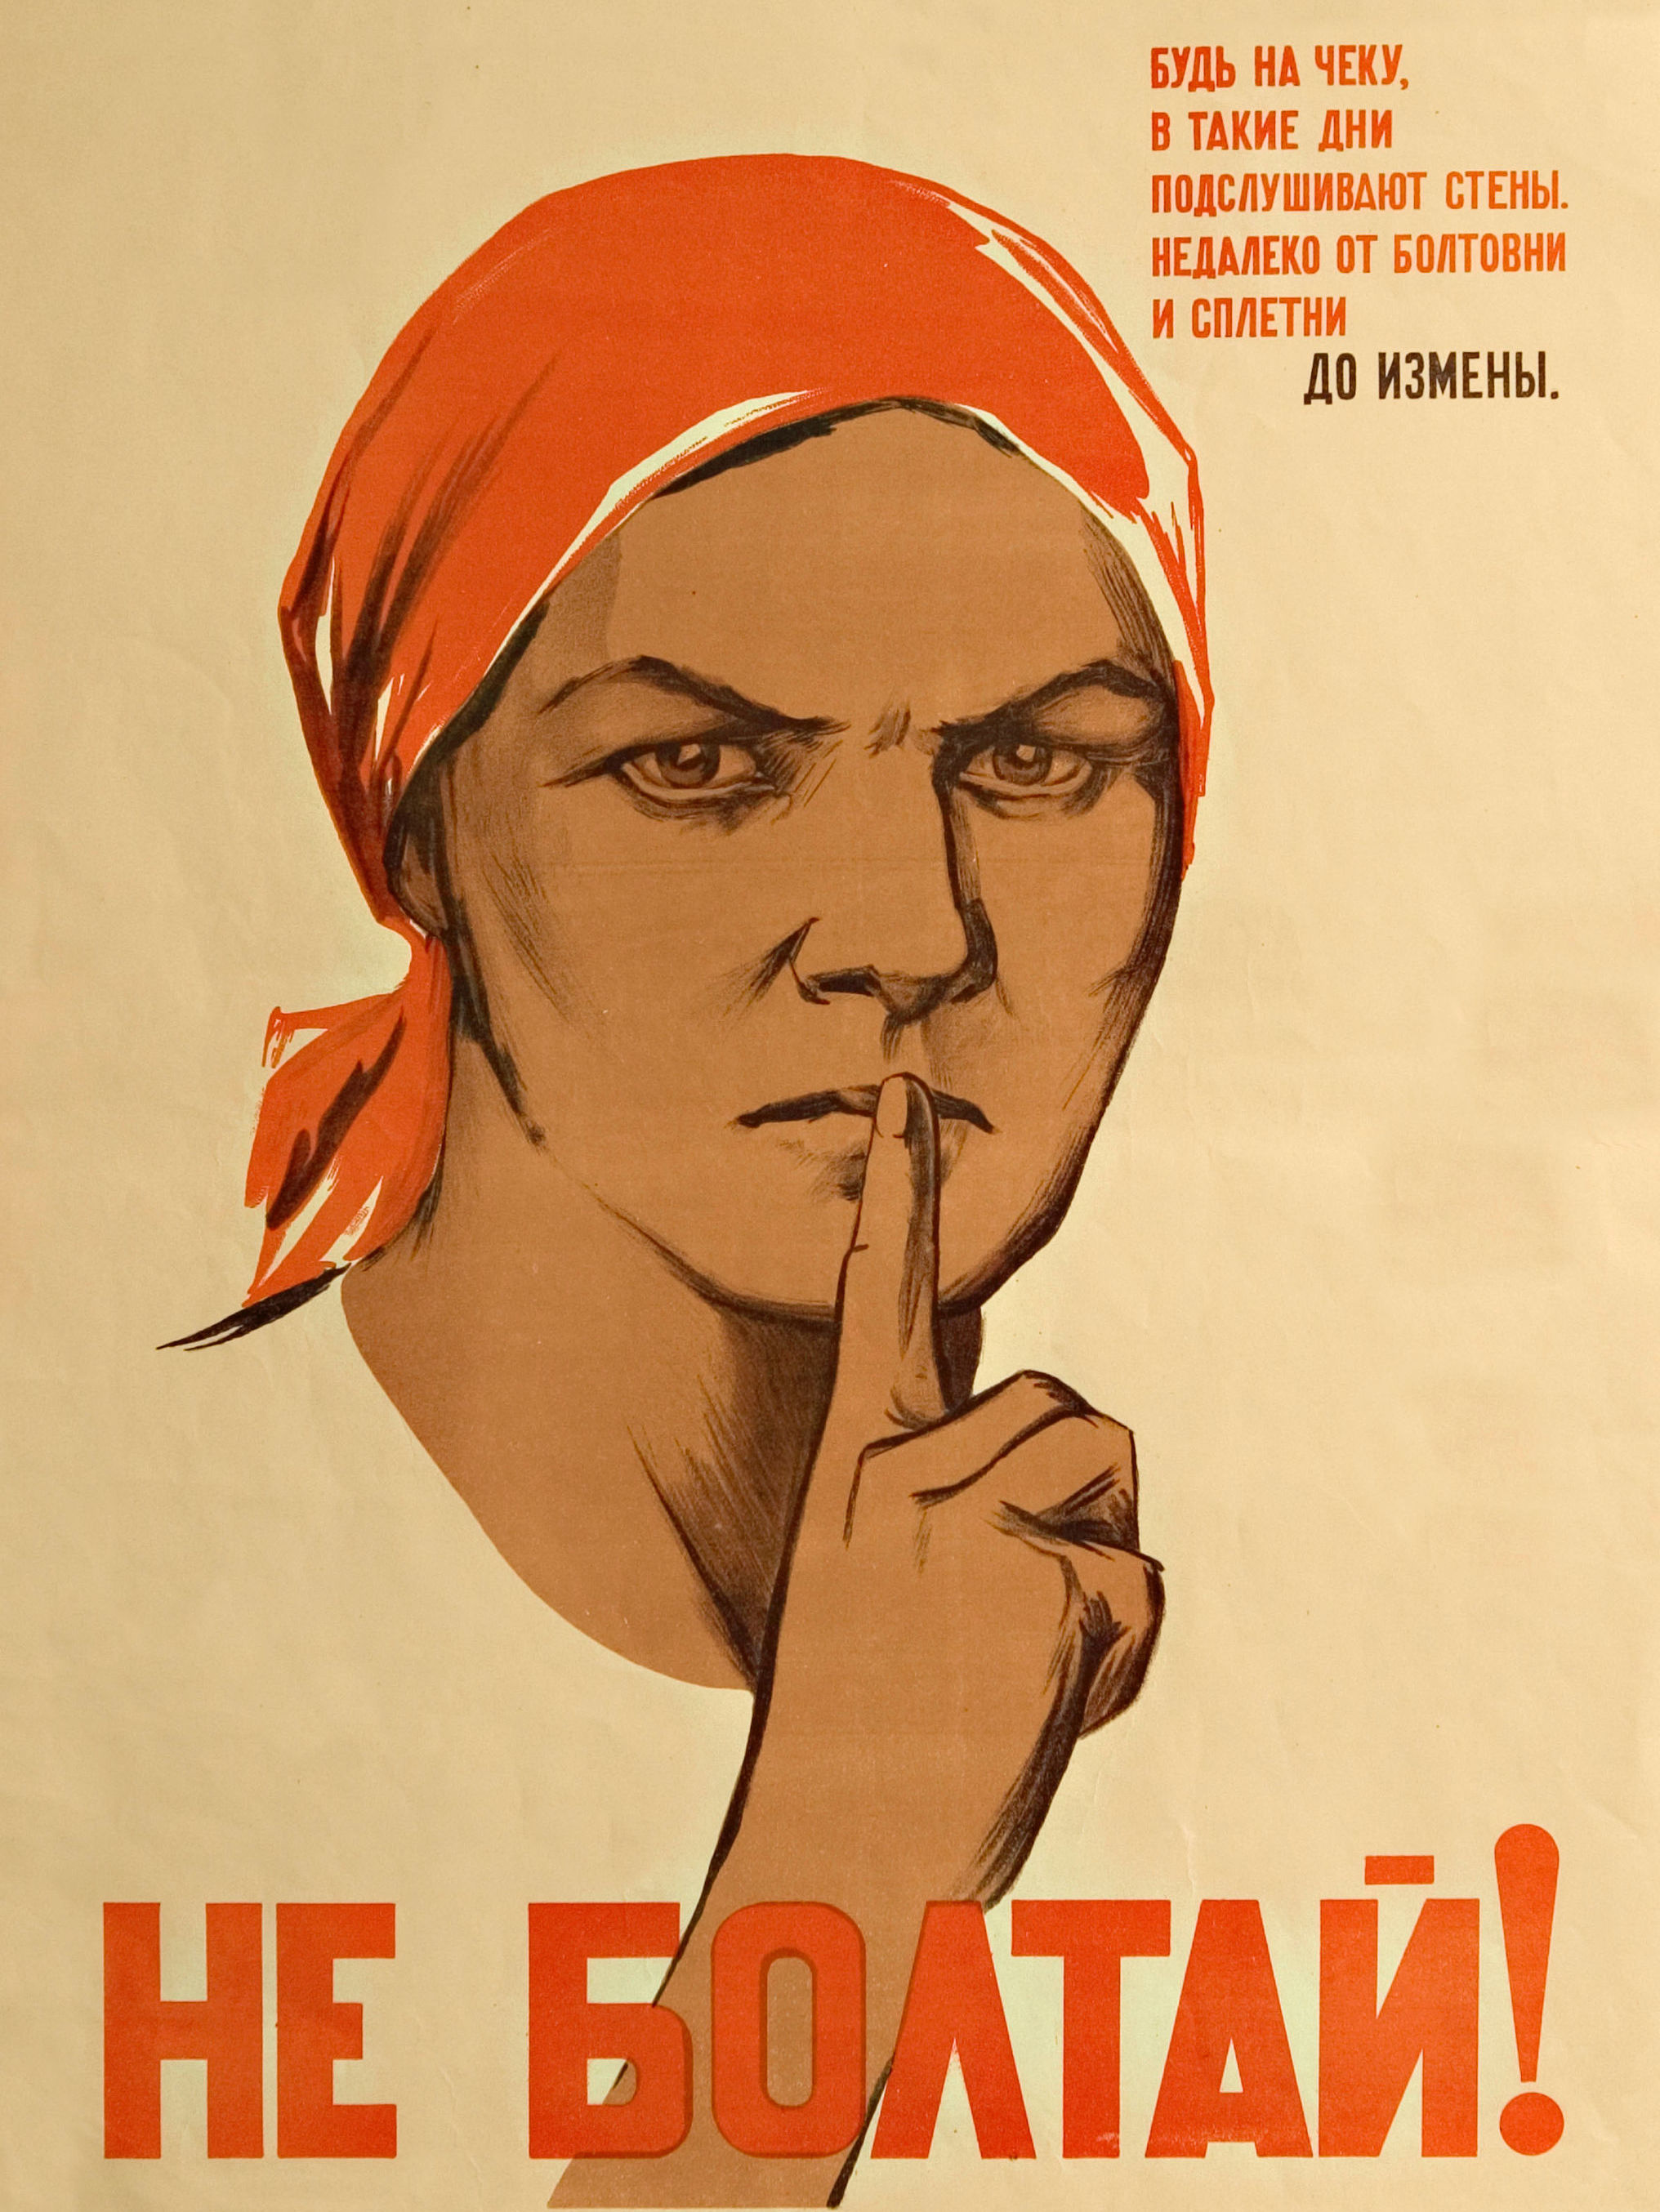 Плакат Ватолиной Н.Н. и Денисова Н.В. "Не болтай!",1941 год